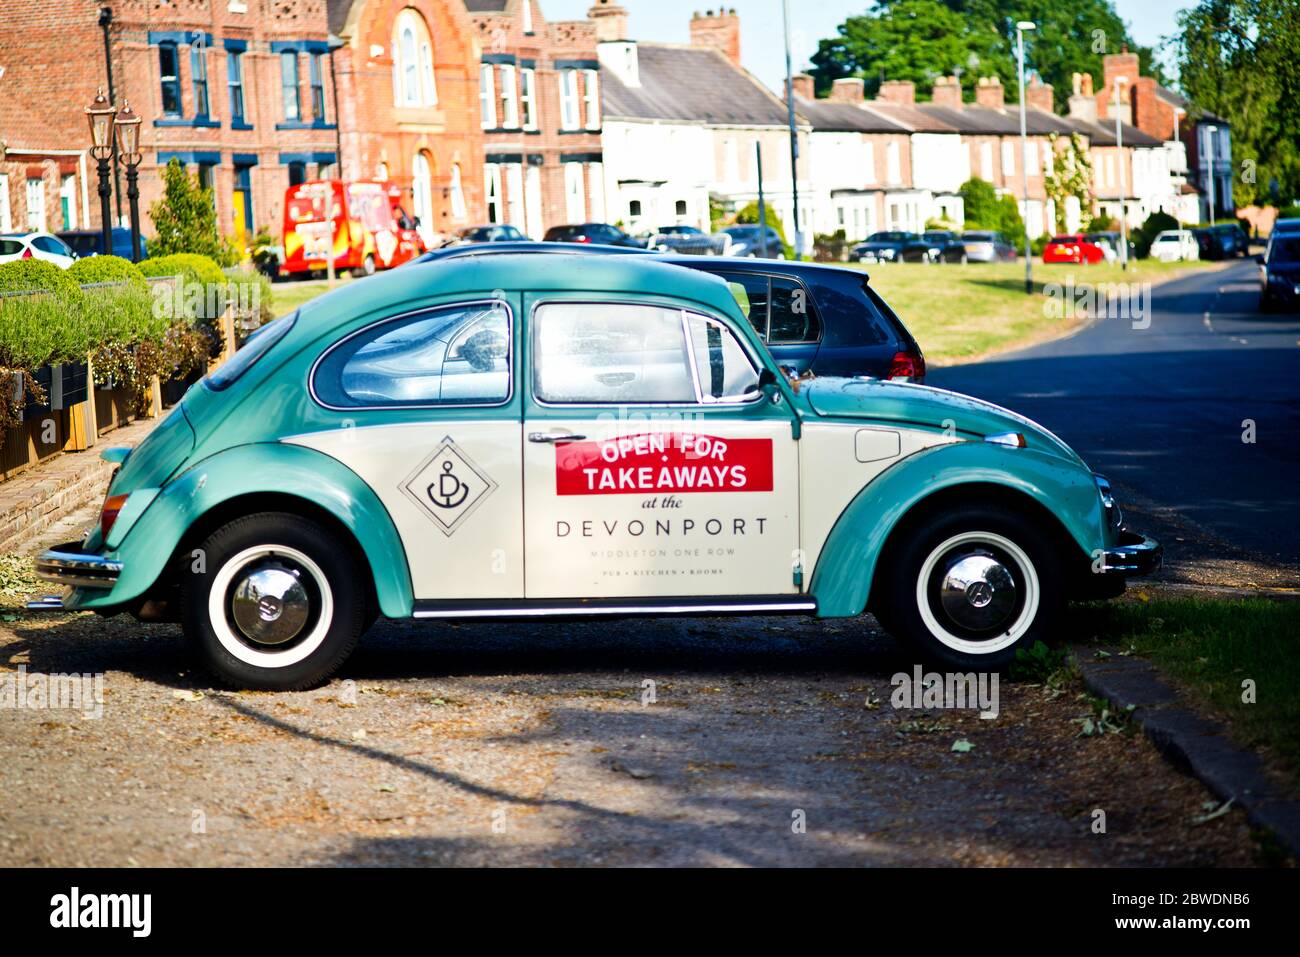 Volkswagen Beetle Werbung offen für takeaways für die Devonport, Middleton on Row, Borough of Darlington, England Stockfoto